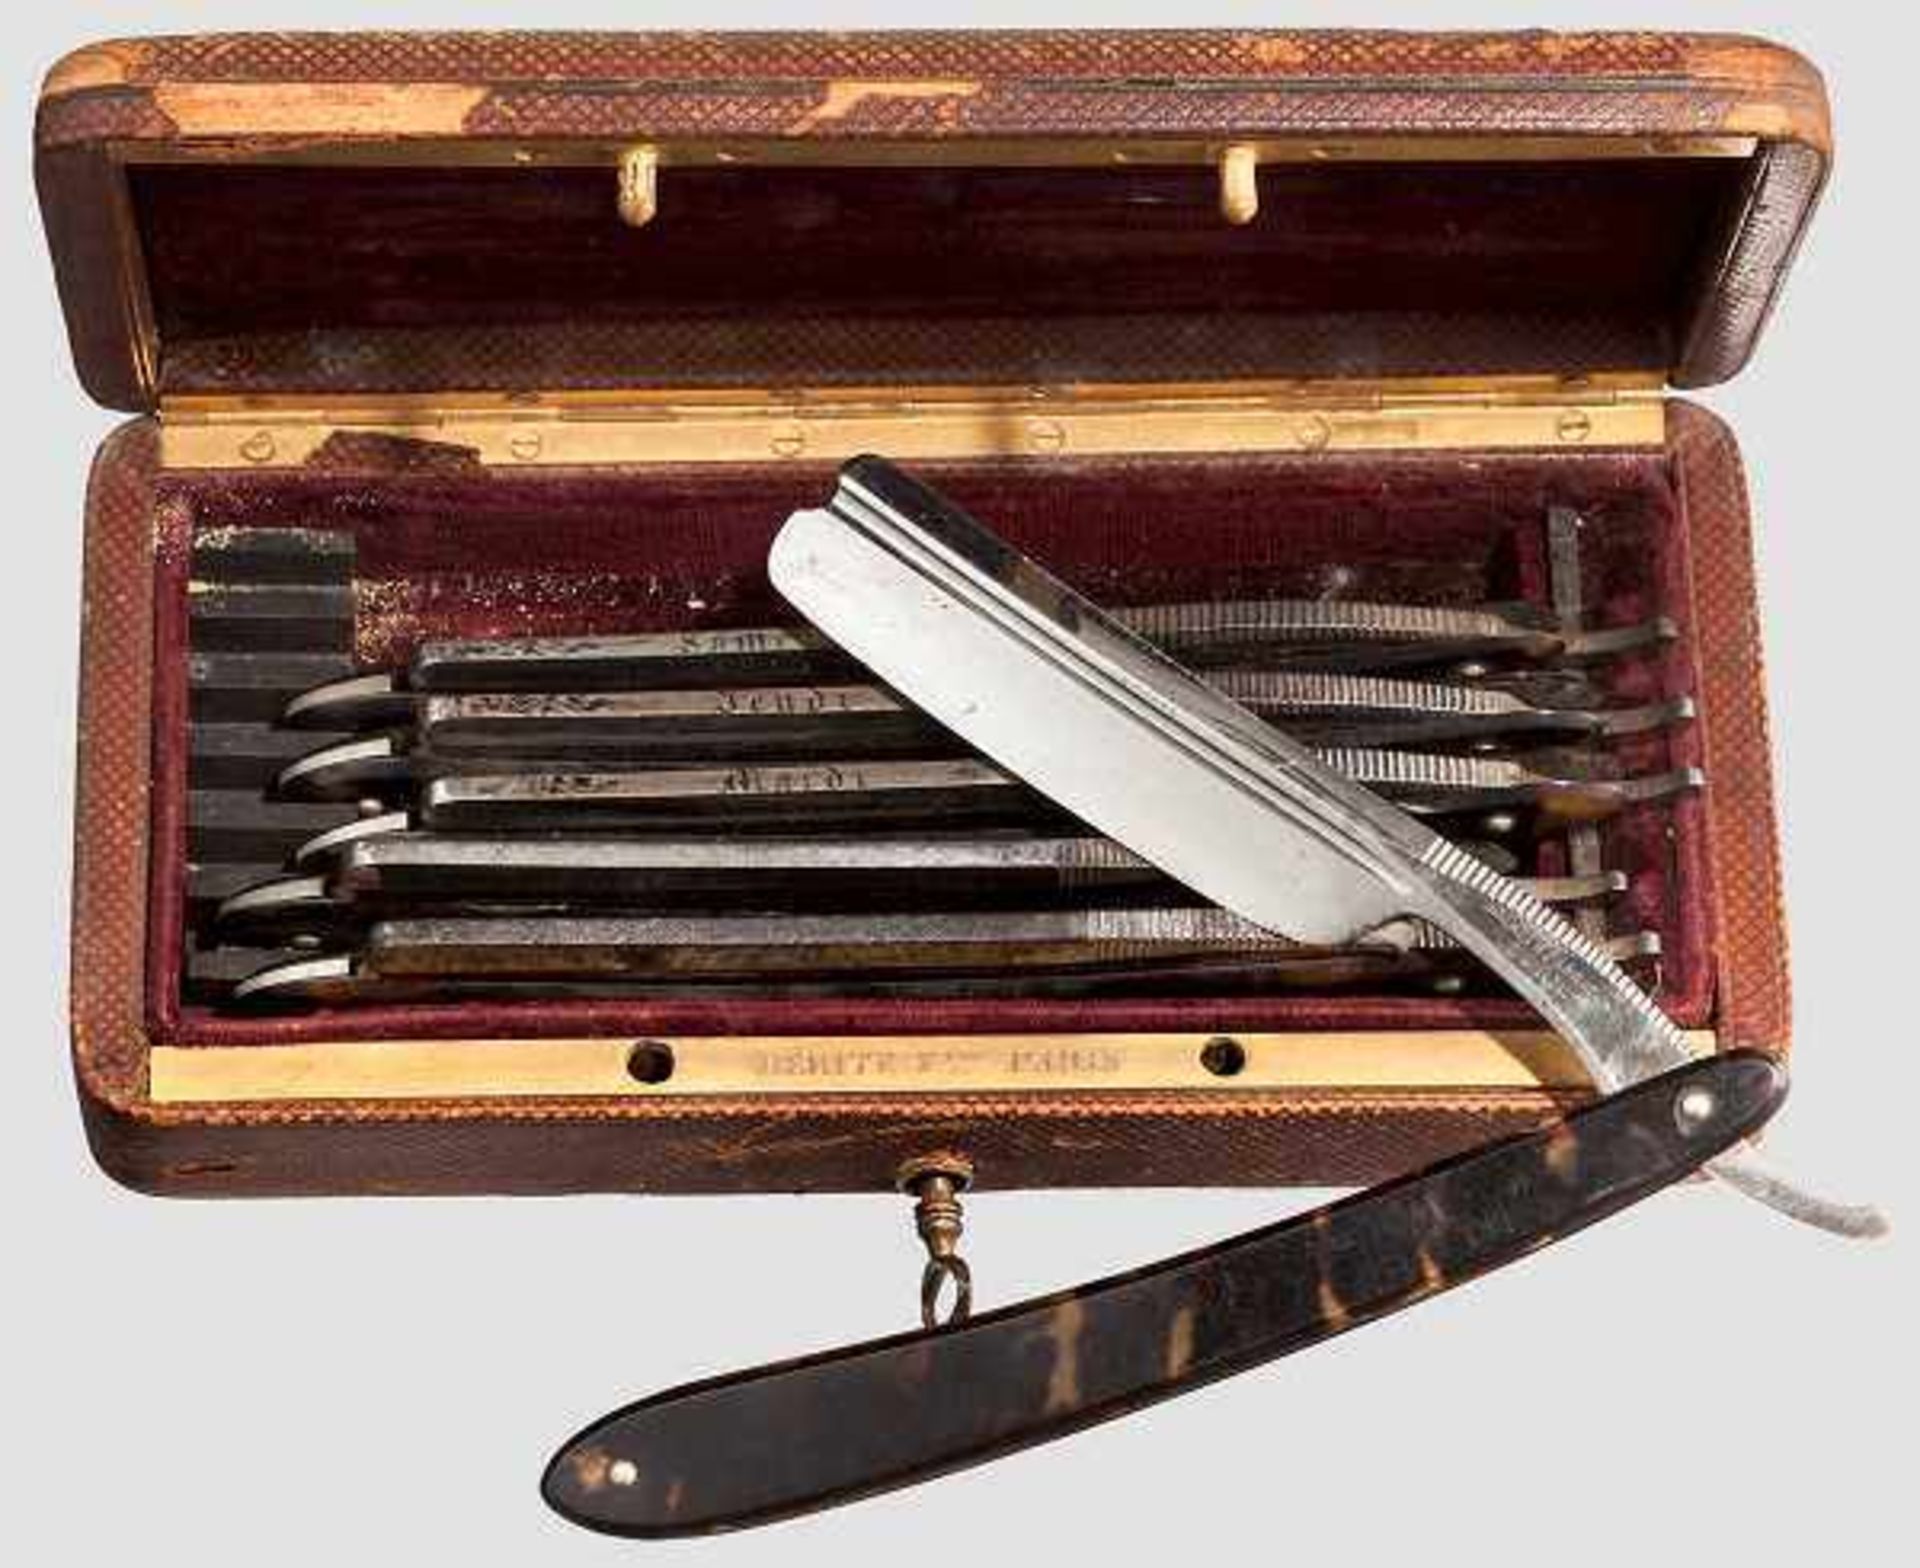 Rasiermesser-Set für eine Woche, Paris um 1900 Insgesamt sechs Rasiermesser (eines fehlt), die